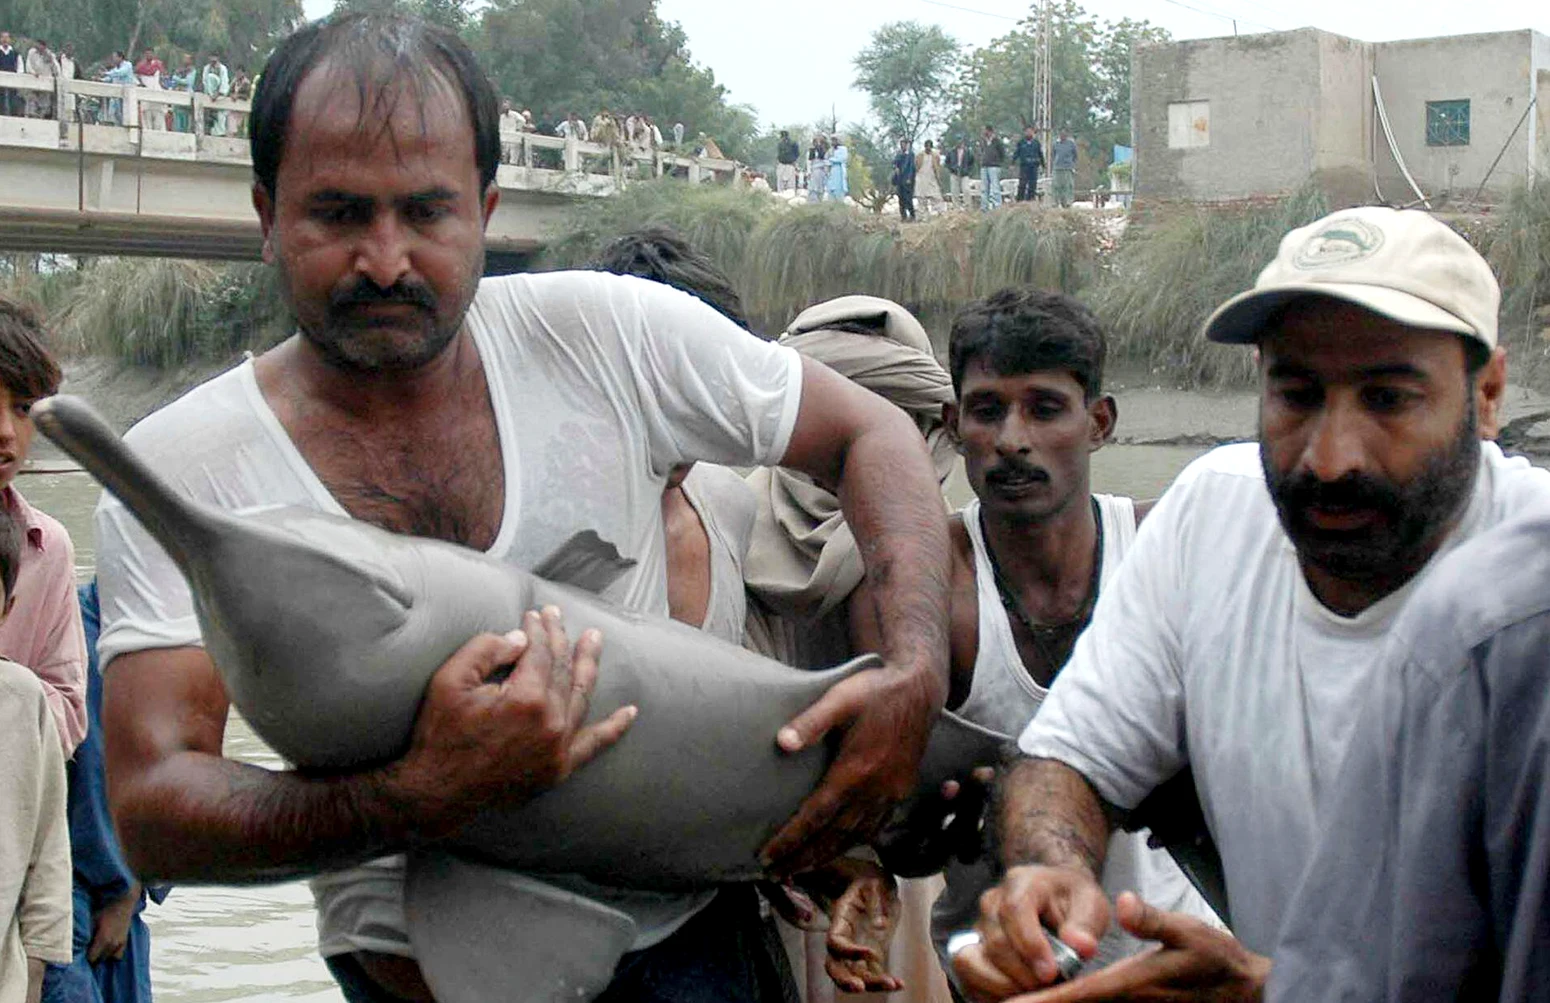 Εθελοντές σώζουν ένα δελφίνι που έχει κολλήσει σε ένα κανάλι στα ανοιχτά του ποταμού Ινδού, κοντά στο Καράτσι του Πακιστάν.